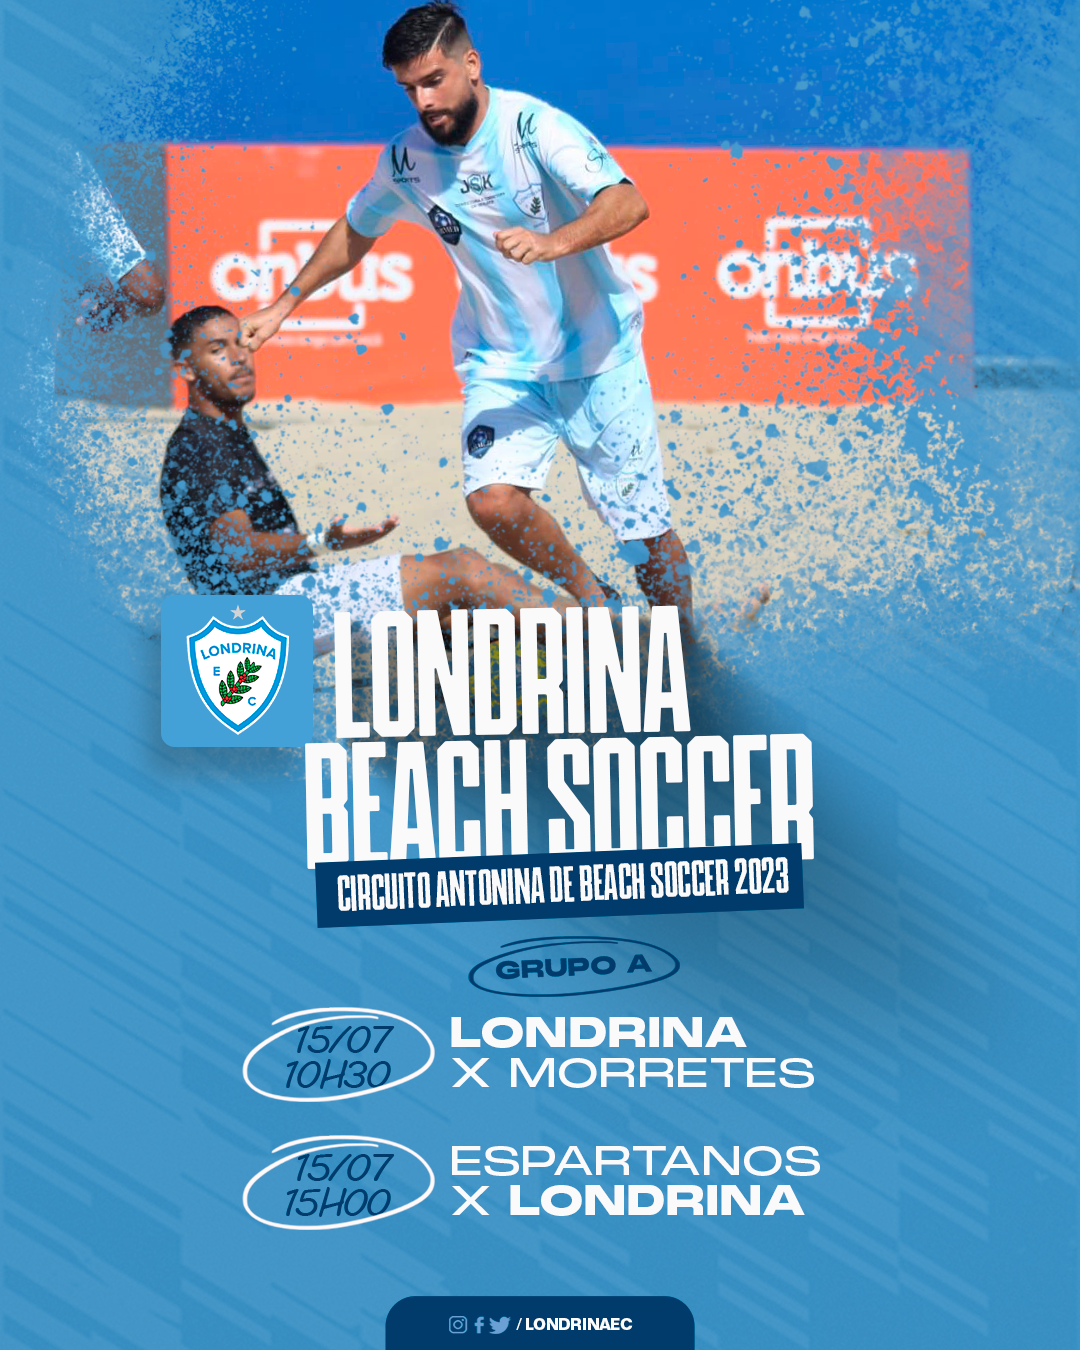 Londrina Beach Soccer disputará circuito em Antonina